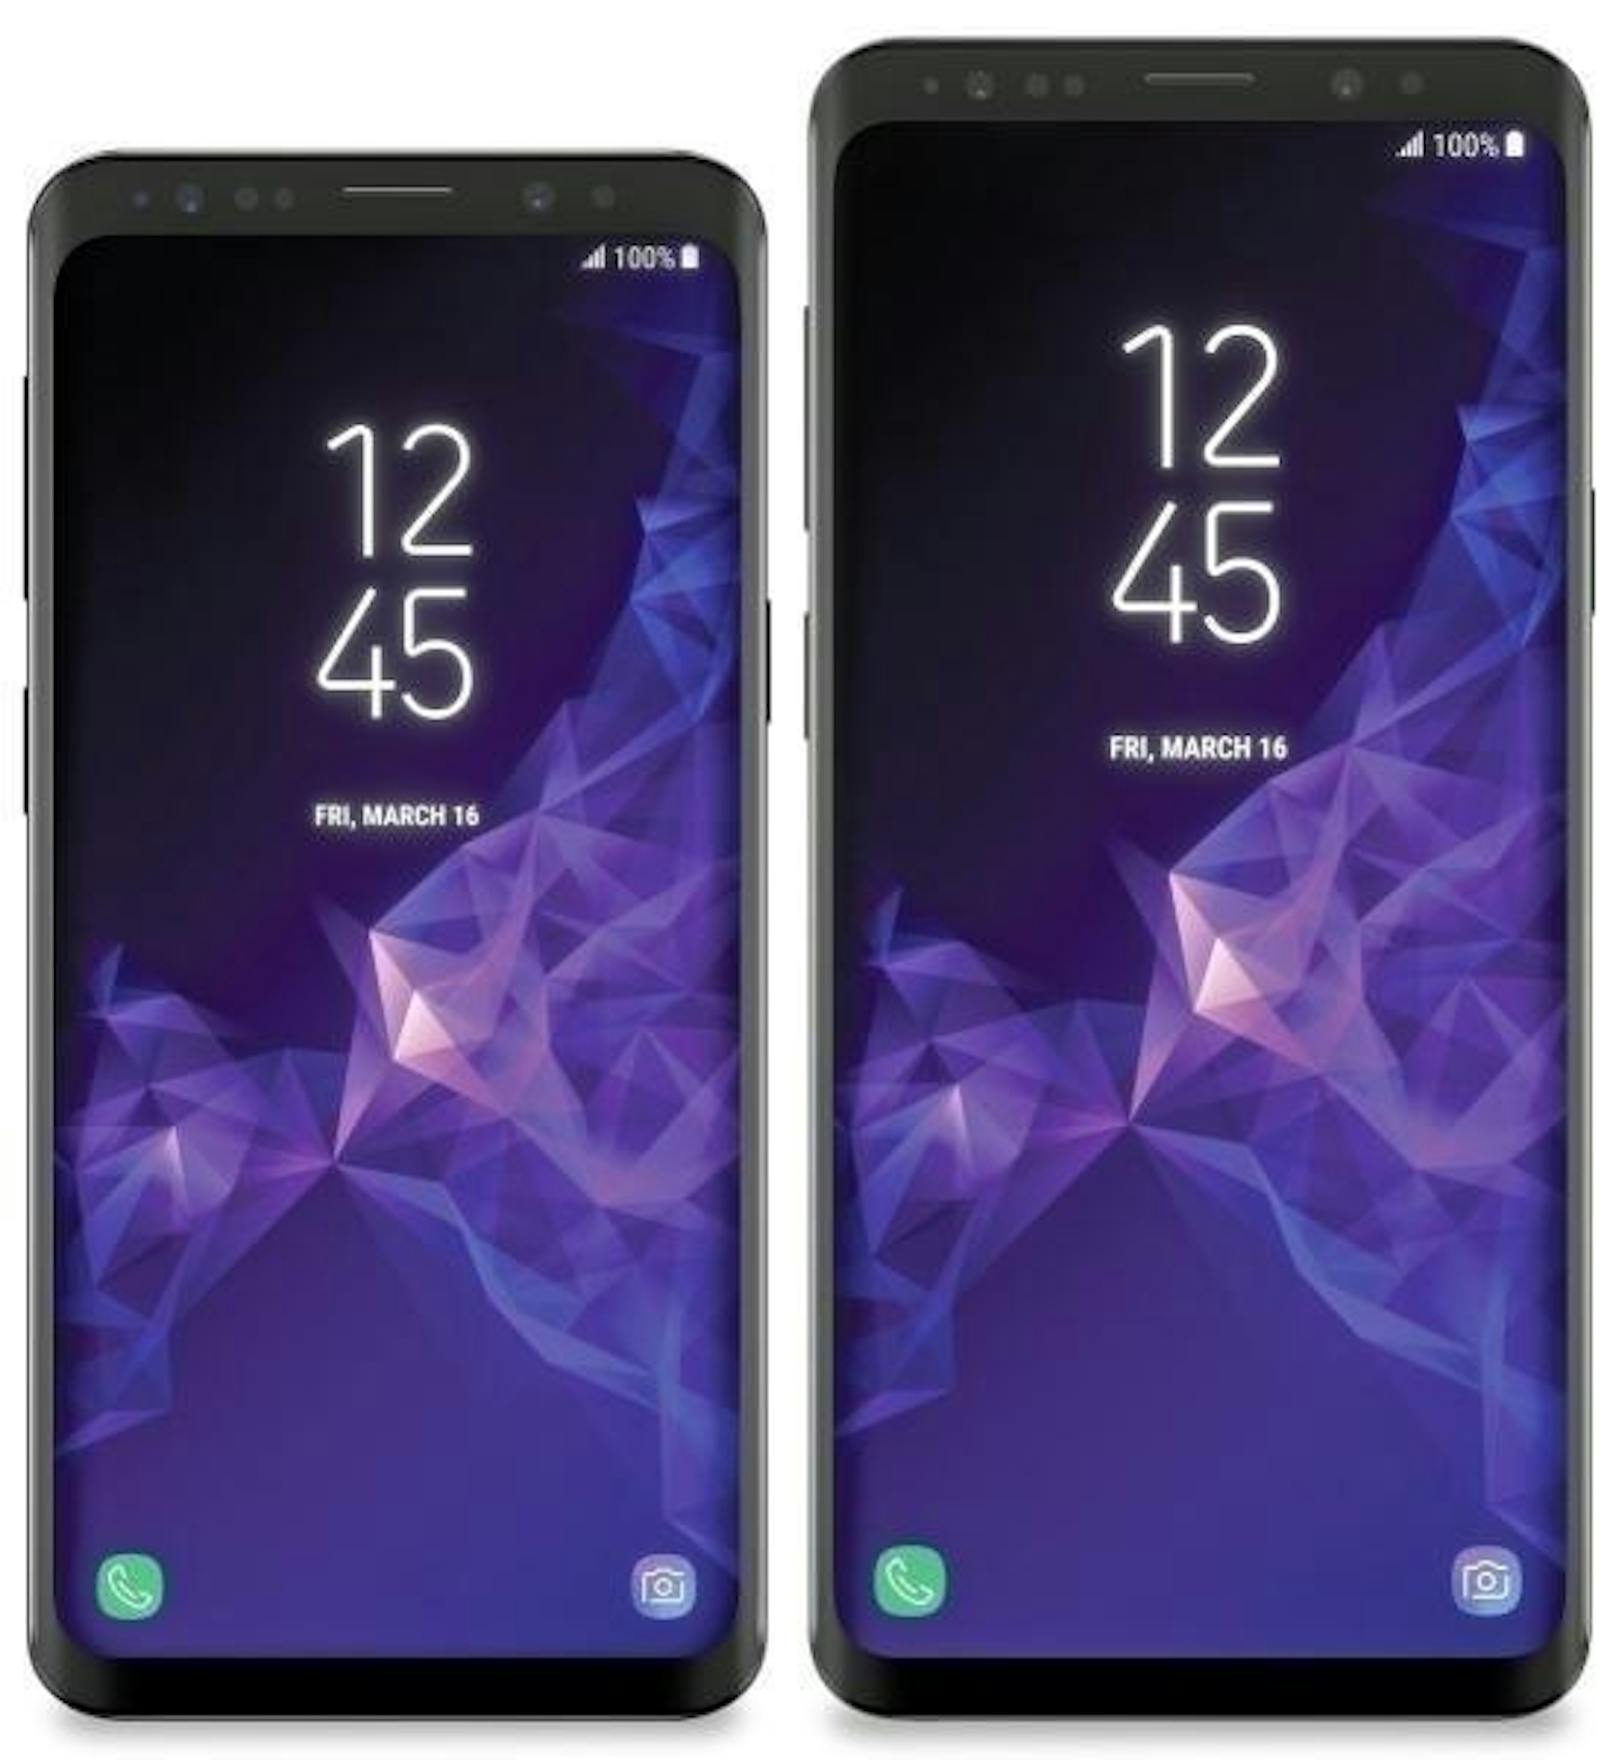 <b>29. Jänner 2018:</b> Eigentlich wollte Samsung seine neusten Top-Smartphones erst am 25. Februar offiziell vorstellen. Dem kam der US-Blogger Evan Blass allerdings zuvor. Der für zutreffende Enthüllungen bekannte Blogger veröffentlichte auf Twitter ein Foto, das die zwei neuen Handys von Samsung, das Galaxy S9 und S9+, zeigen soll. Laut Blass verfügt Ersteres über einen 5,8-Zoll-Touchscreen, das S9+ über eine Bildschirmgröße von 6,2 Zoll. Beide Smartphones sollen ab dem 16. März im Handel erhältlich sein. <a href="https://www.heute.at/digital/multimedia/story/9-Dinge--die-Sie-ueber-das-Galaxy-S9-wissen-muessen-42781104">Weitere Details zu den Geräten finden Sie hier.</a>